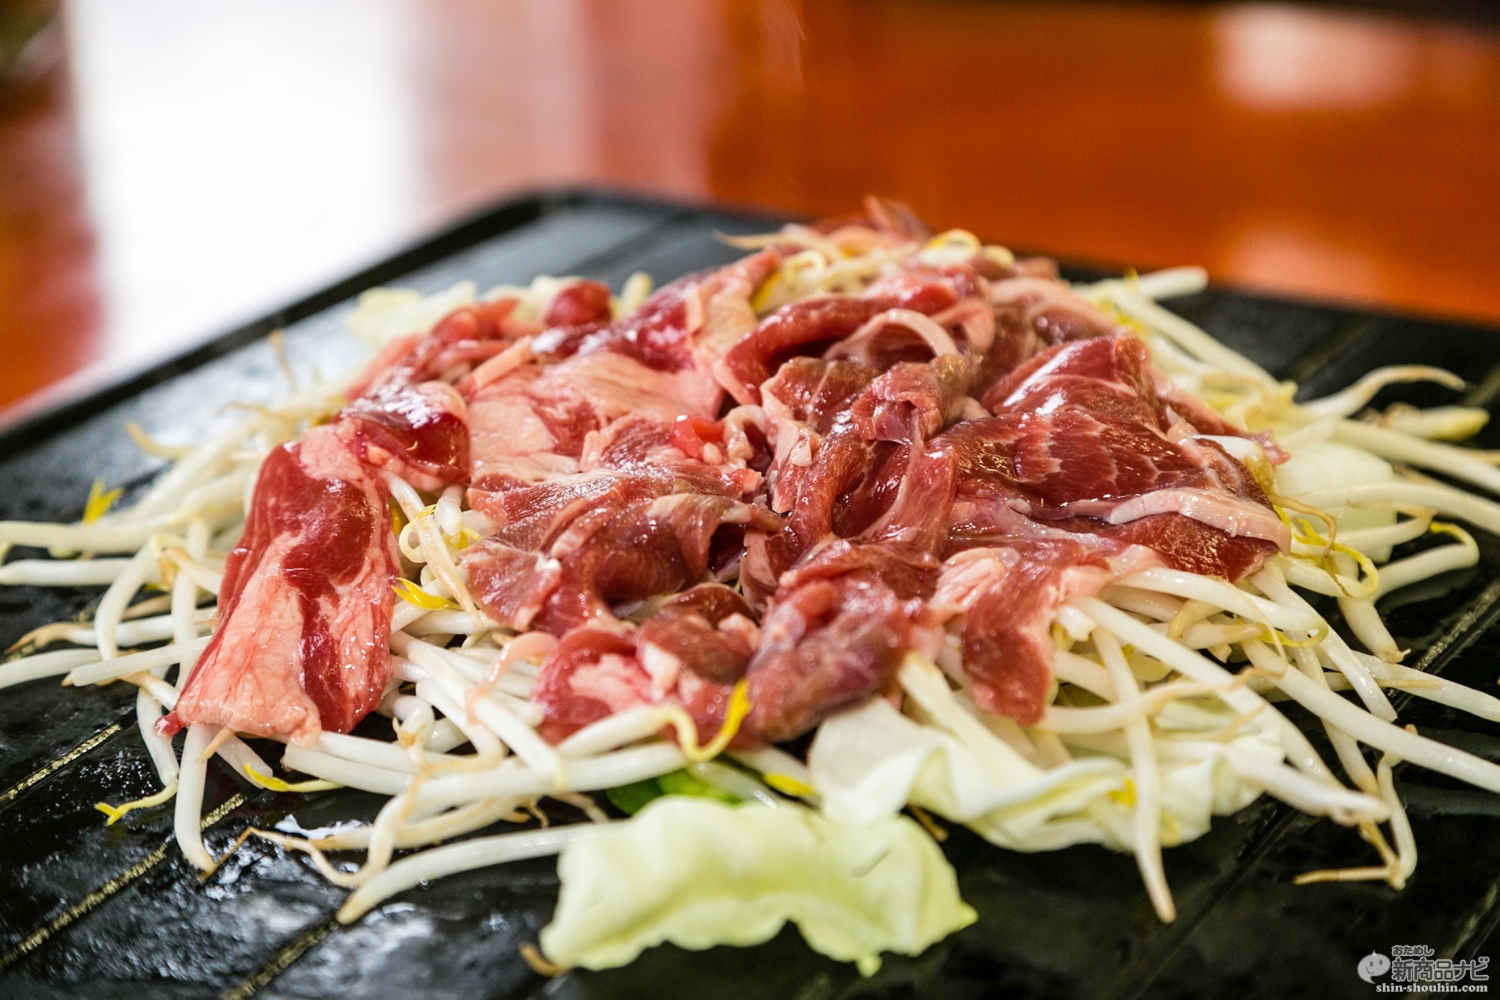 おためし新商品ナビ Blog Archive 羊肉使用の本格派 北海道民熱愛の と表現されがちな郷土料理が ペヤング 北海道ジンギスカン 風やきそば に